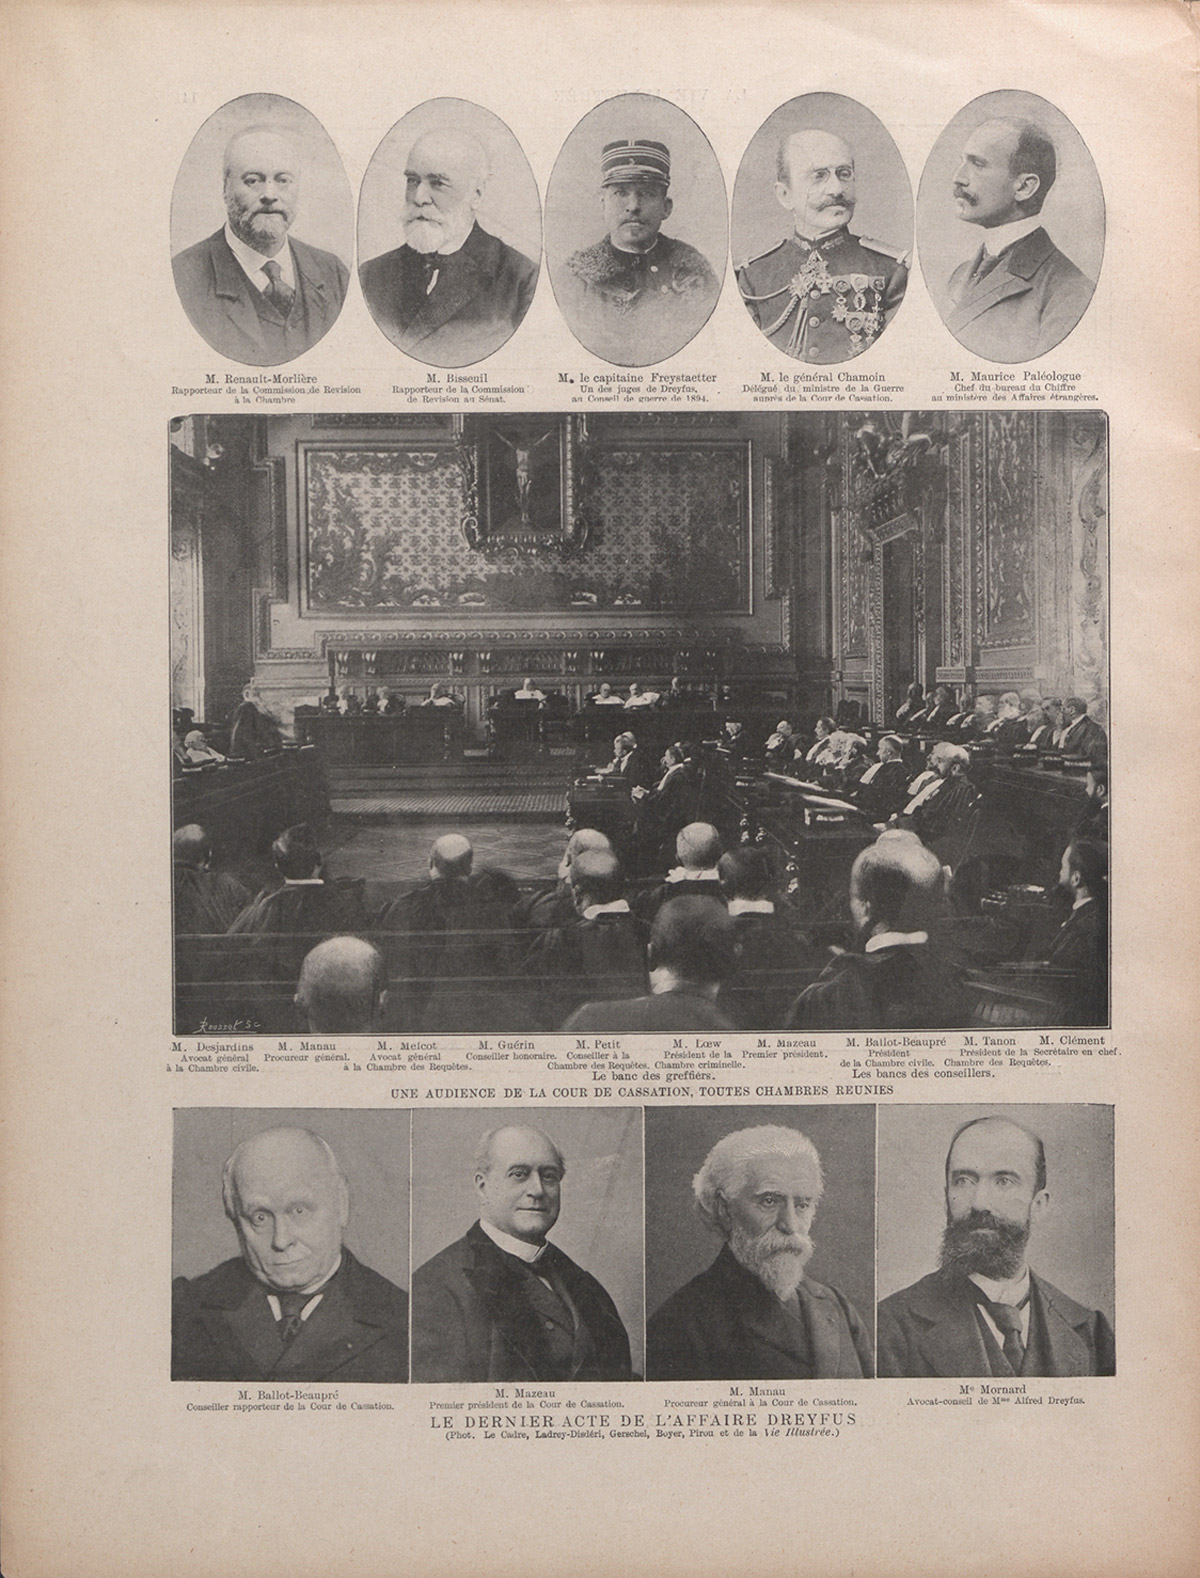 Une audience de la Cour de cassation toutes chambres réunies in La vie illustrée,numéro spécial, L'affaire Dreyfus par l'image,1899